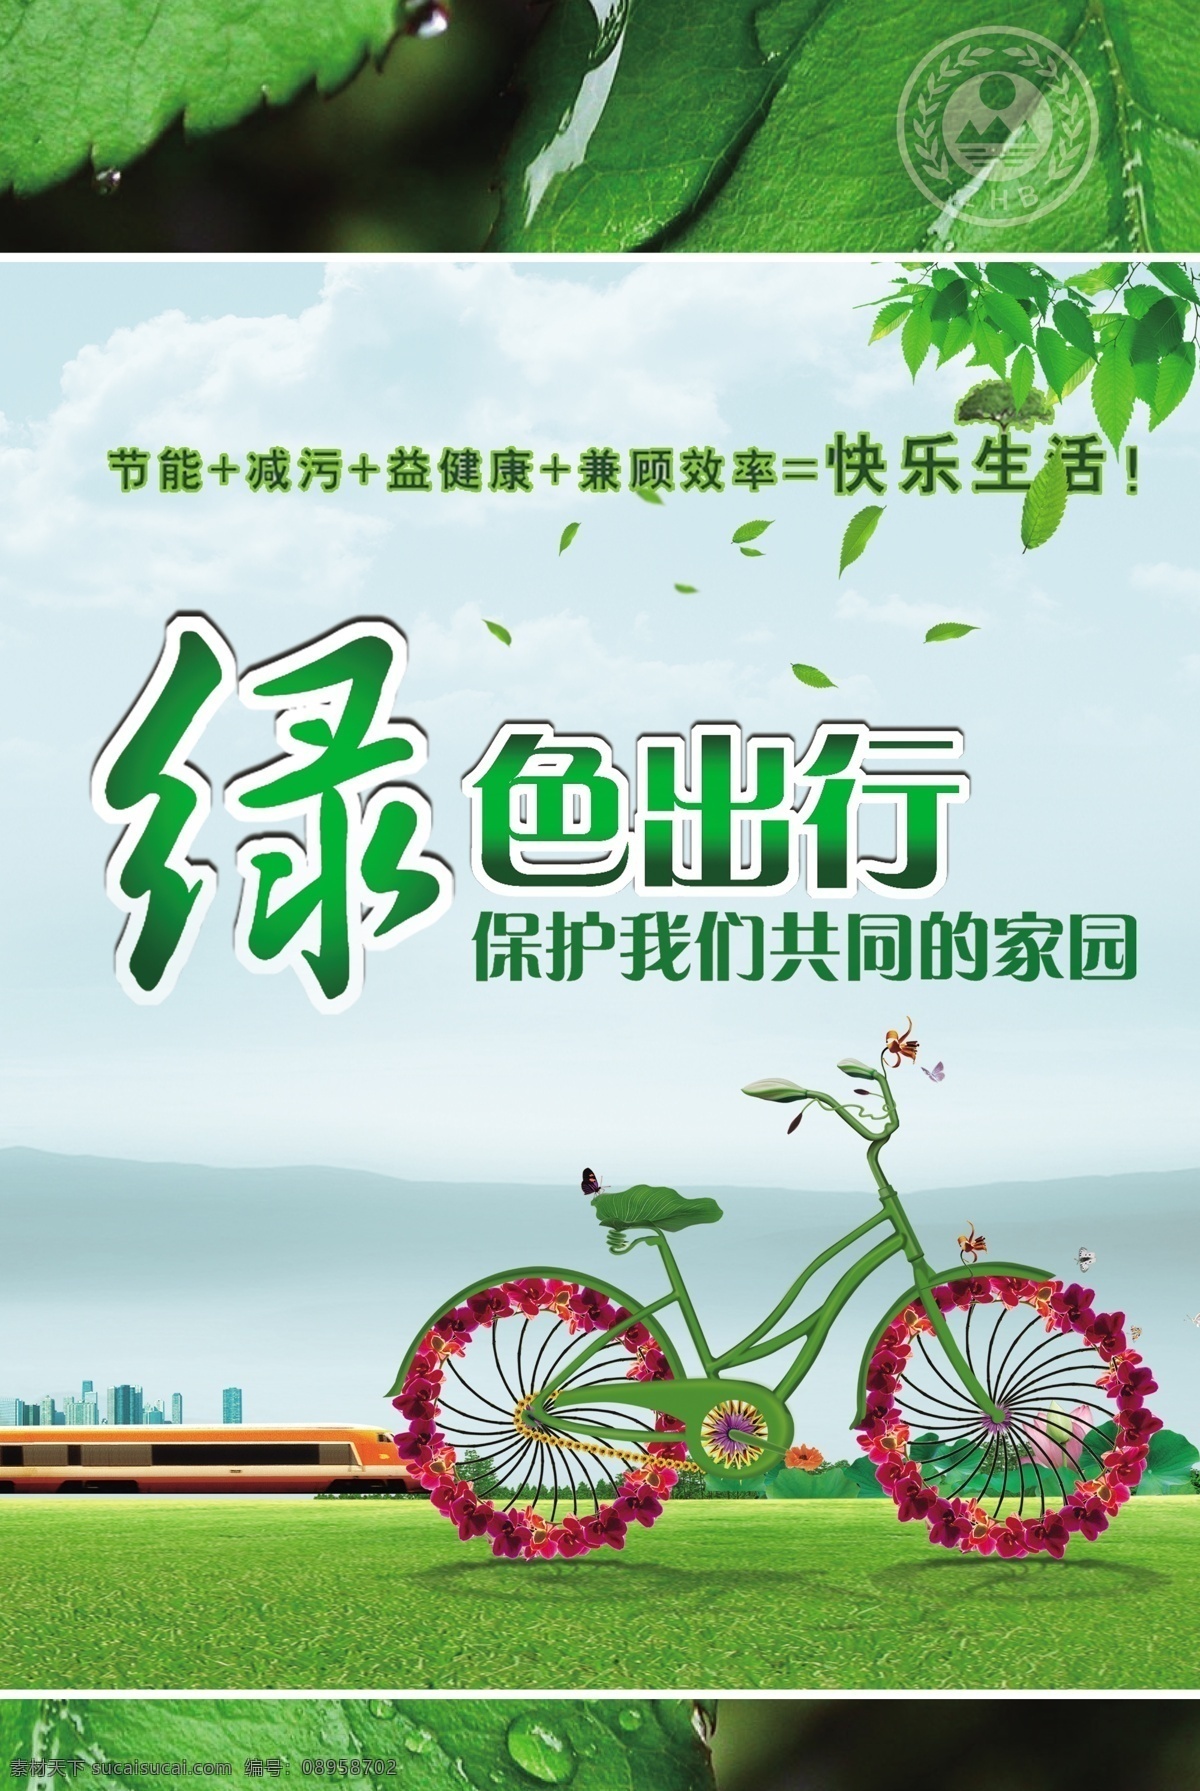 环保生态海报 生态环保 生态文明 绿色家园 绿色出行 绿色 树叶 水珠水滴 宣传海报 节能 自行车 广告设计模板 源文件